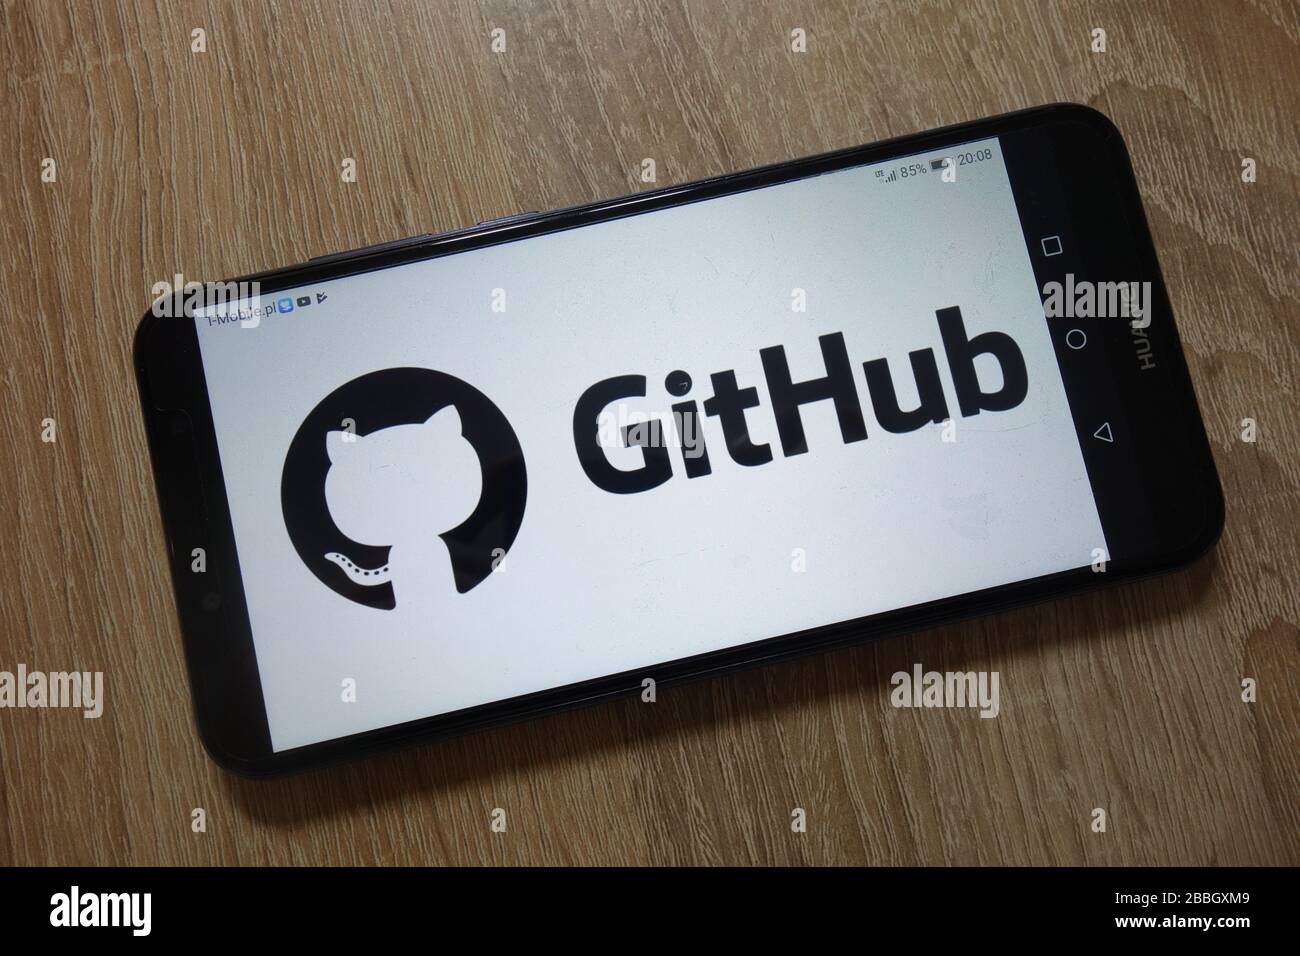 GitHub logo displayed on smartphone Stock Photo